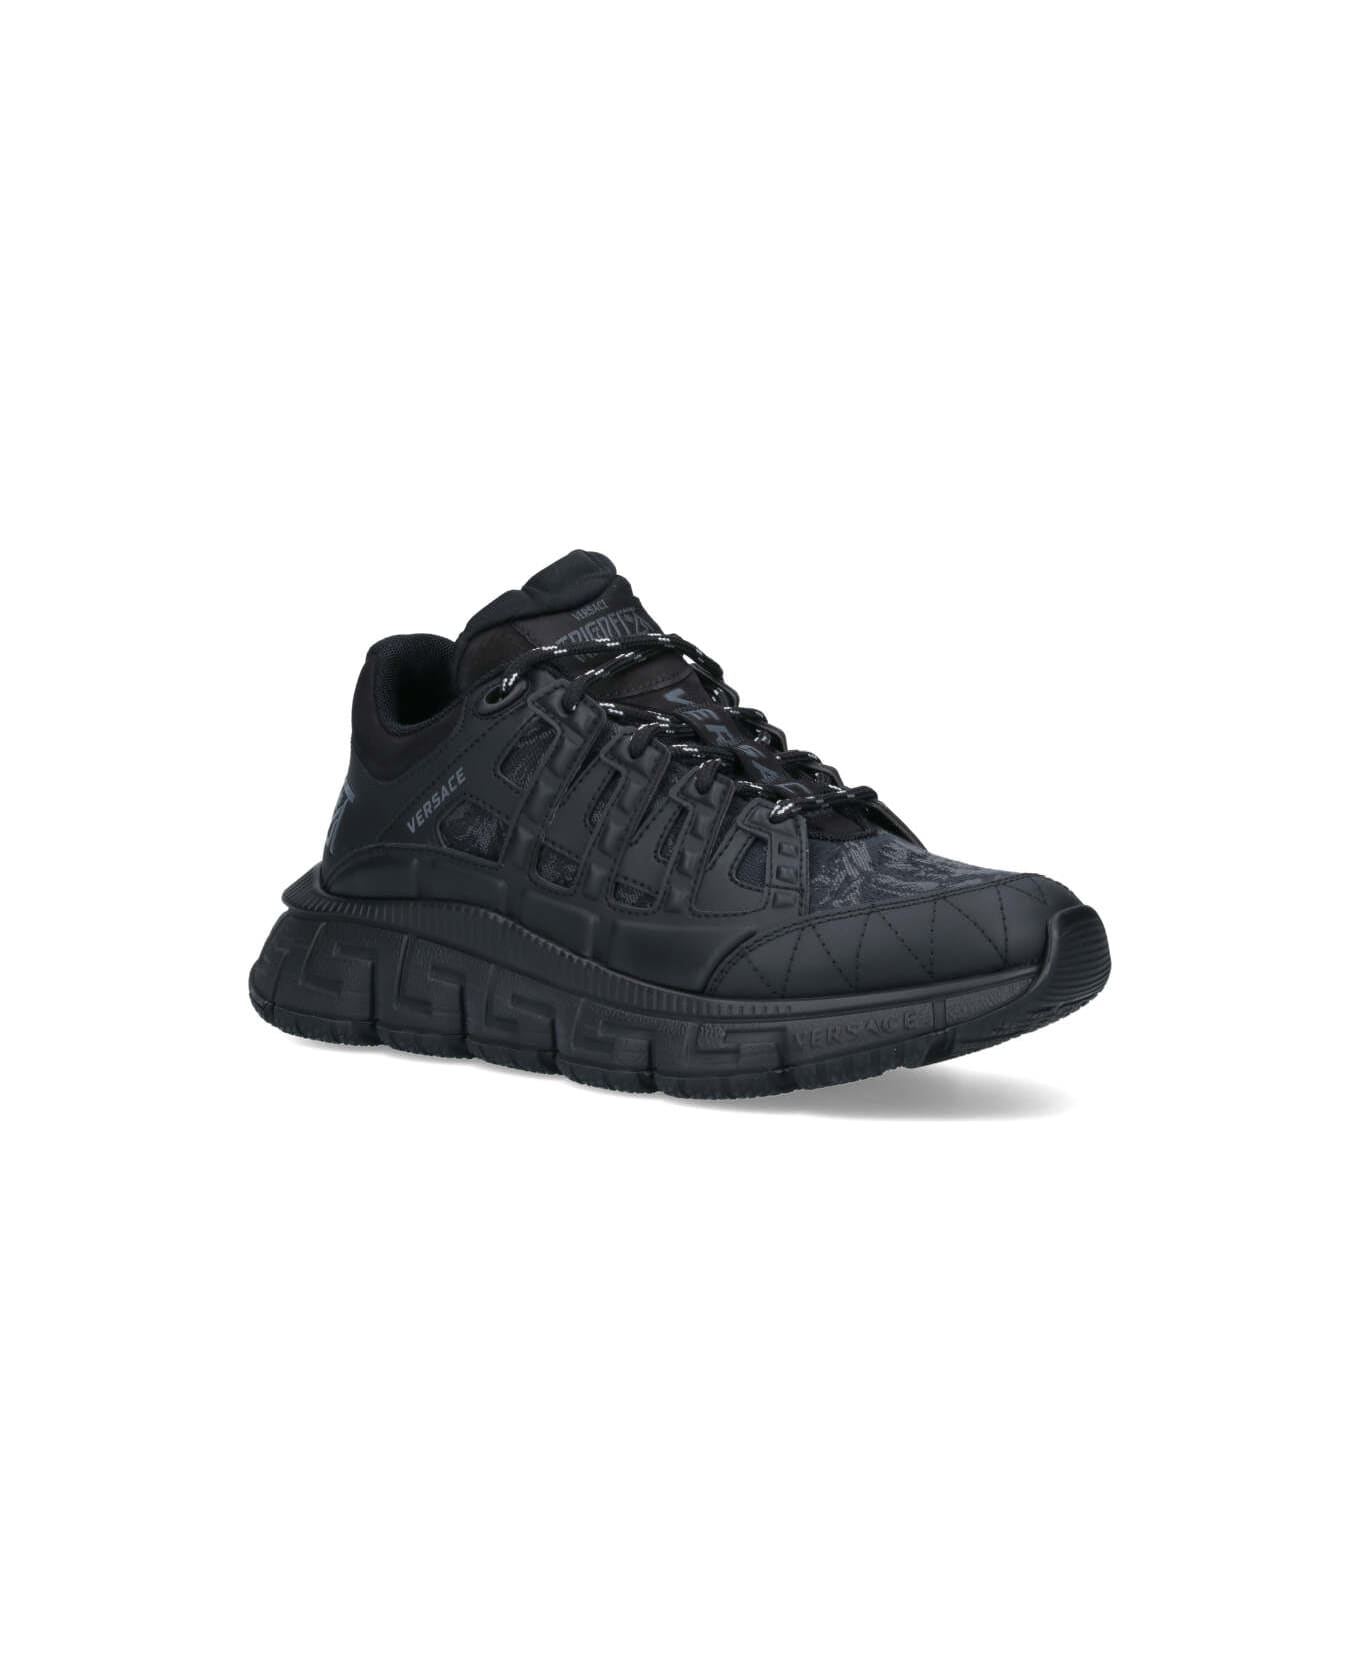 Versace Black Fabric Blend Sneakers - Black スニーカー